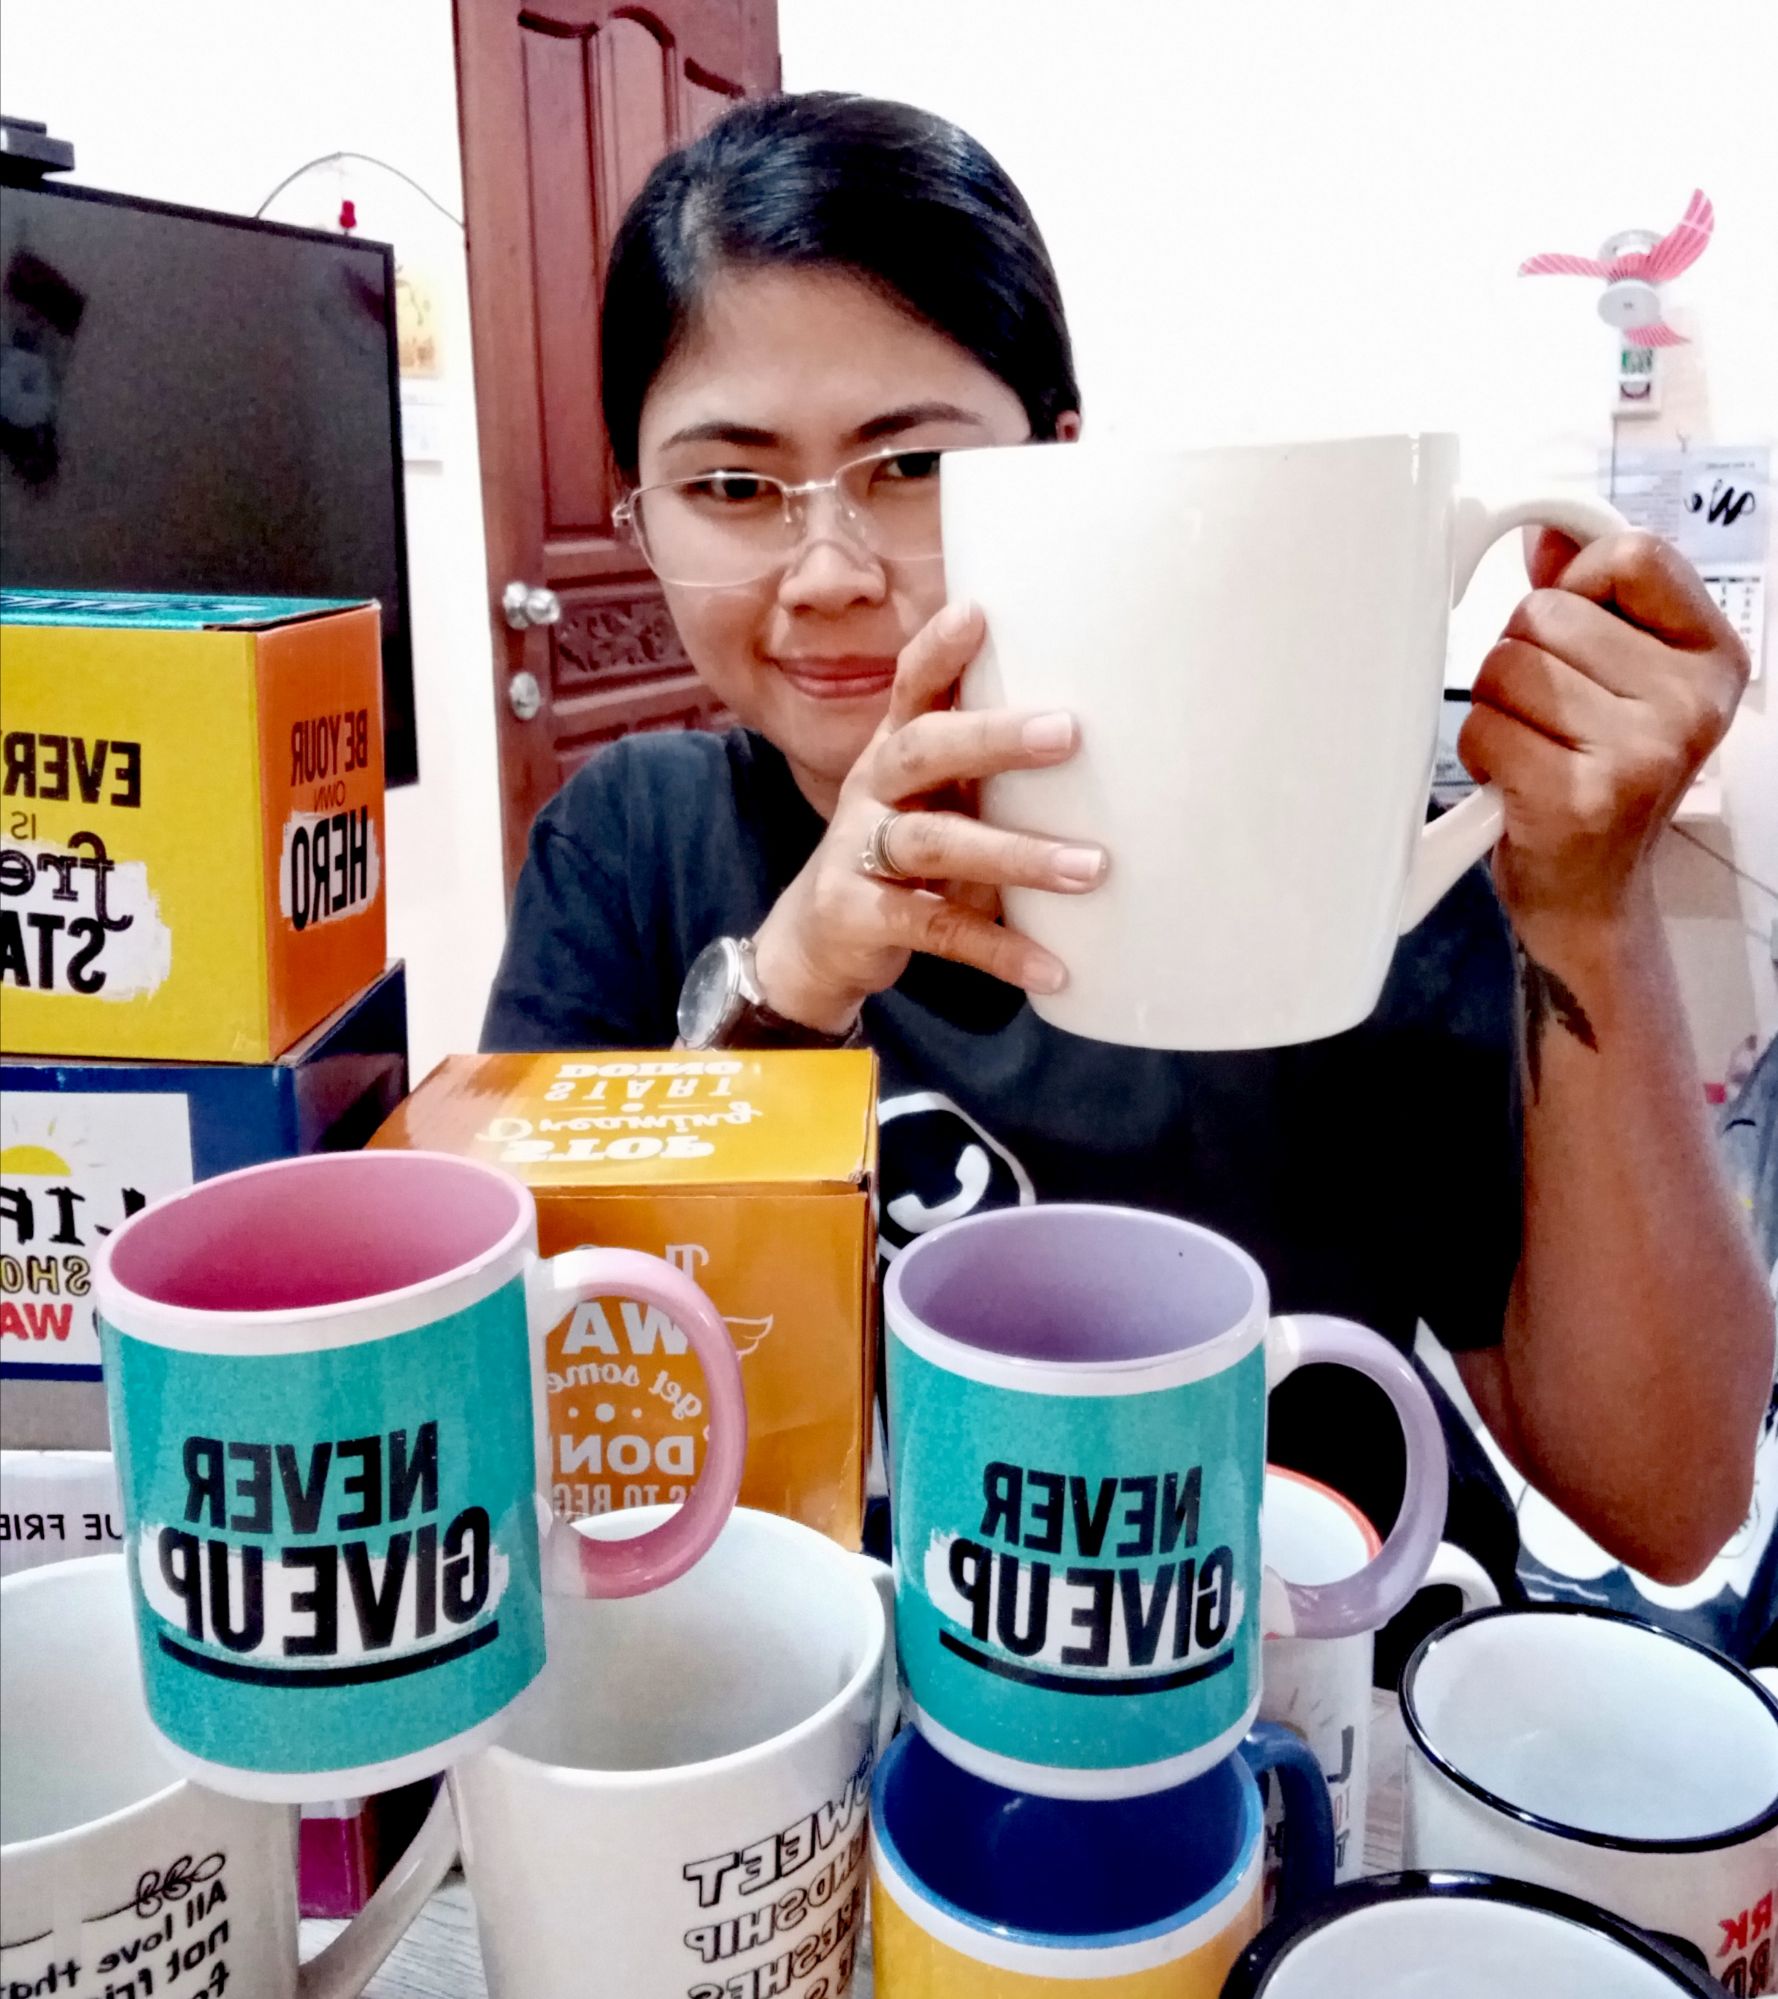 1.2 Liters Big Mug Oversized Mug Giant Mug 350ml-1200ml Cup Gift Ideas  Coffee Mug